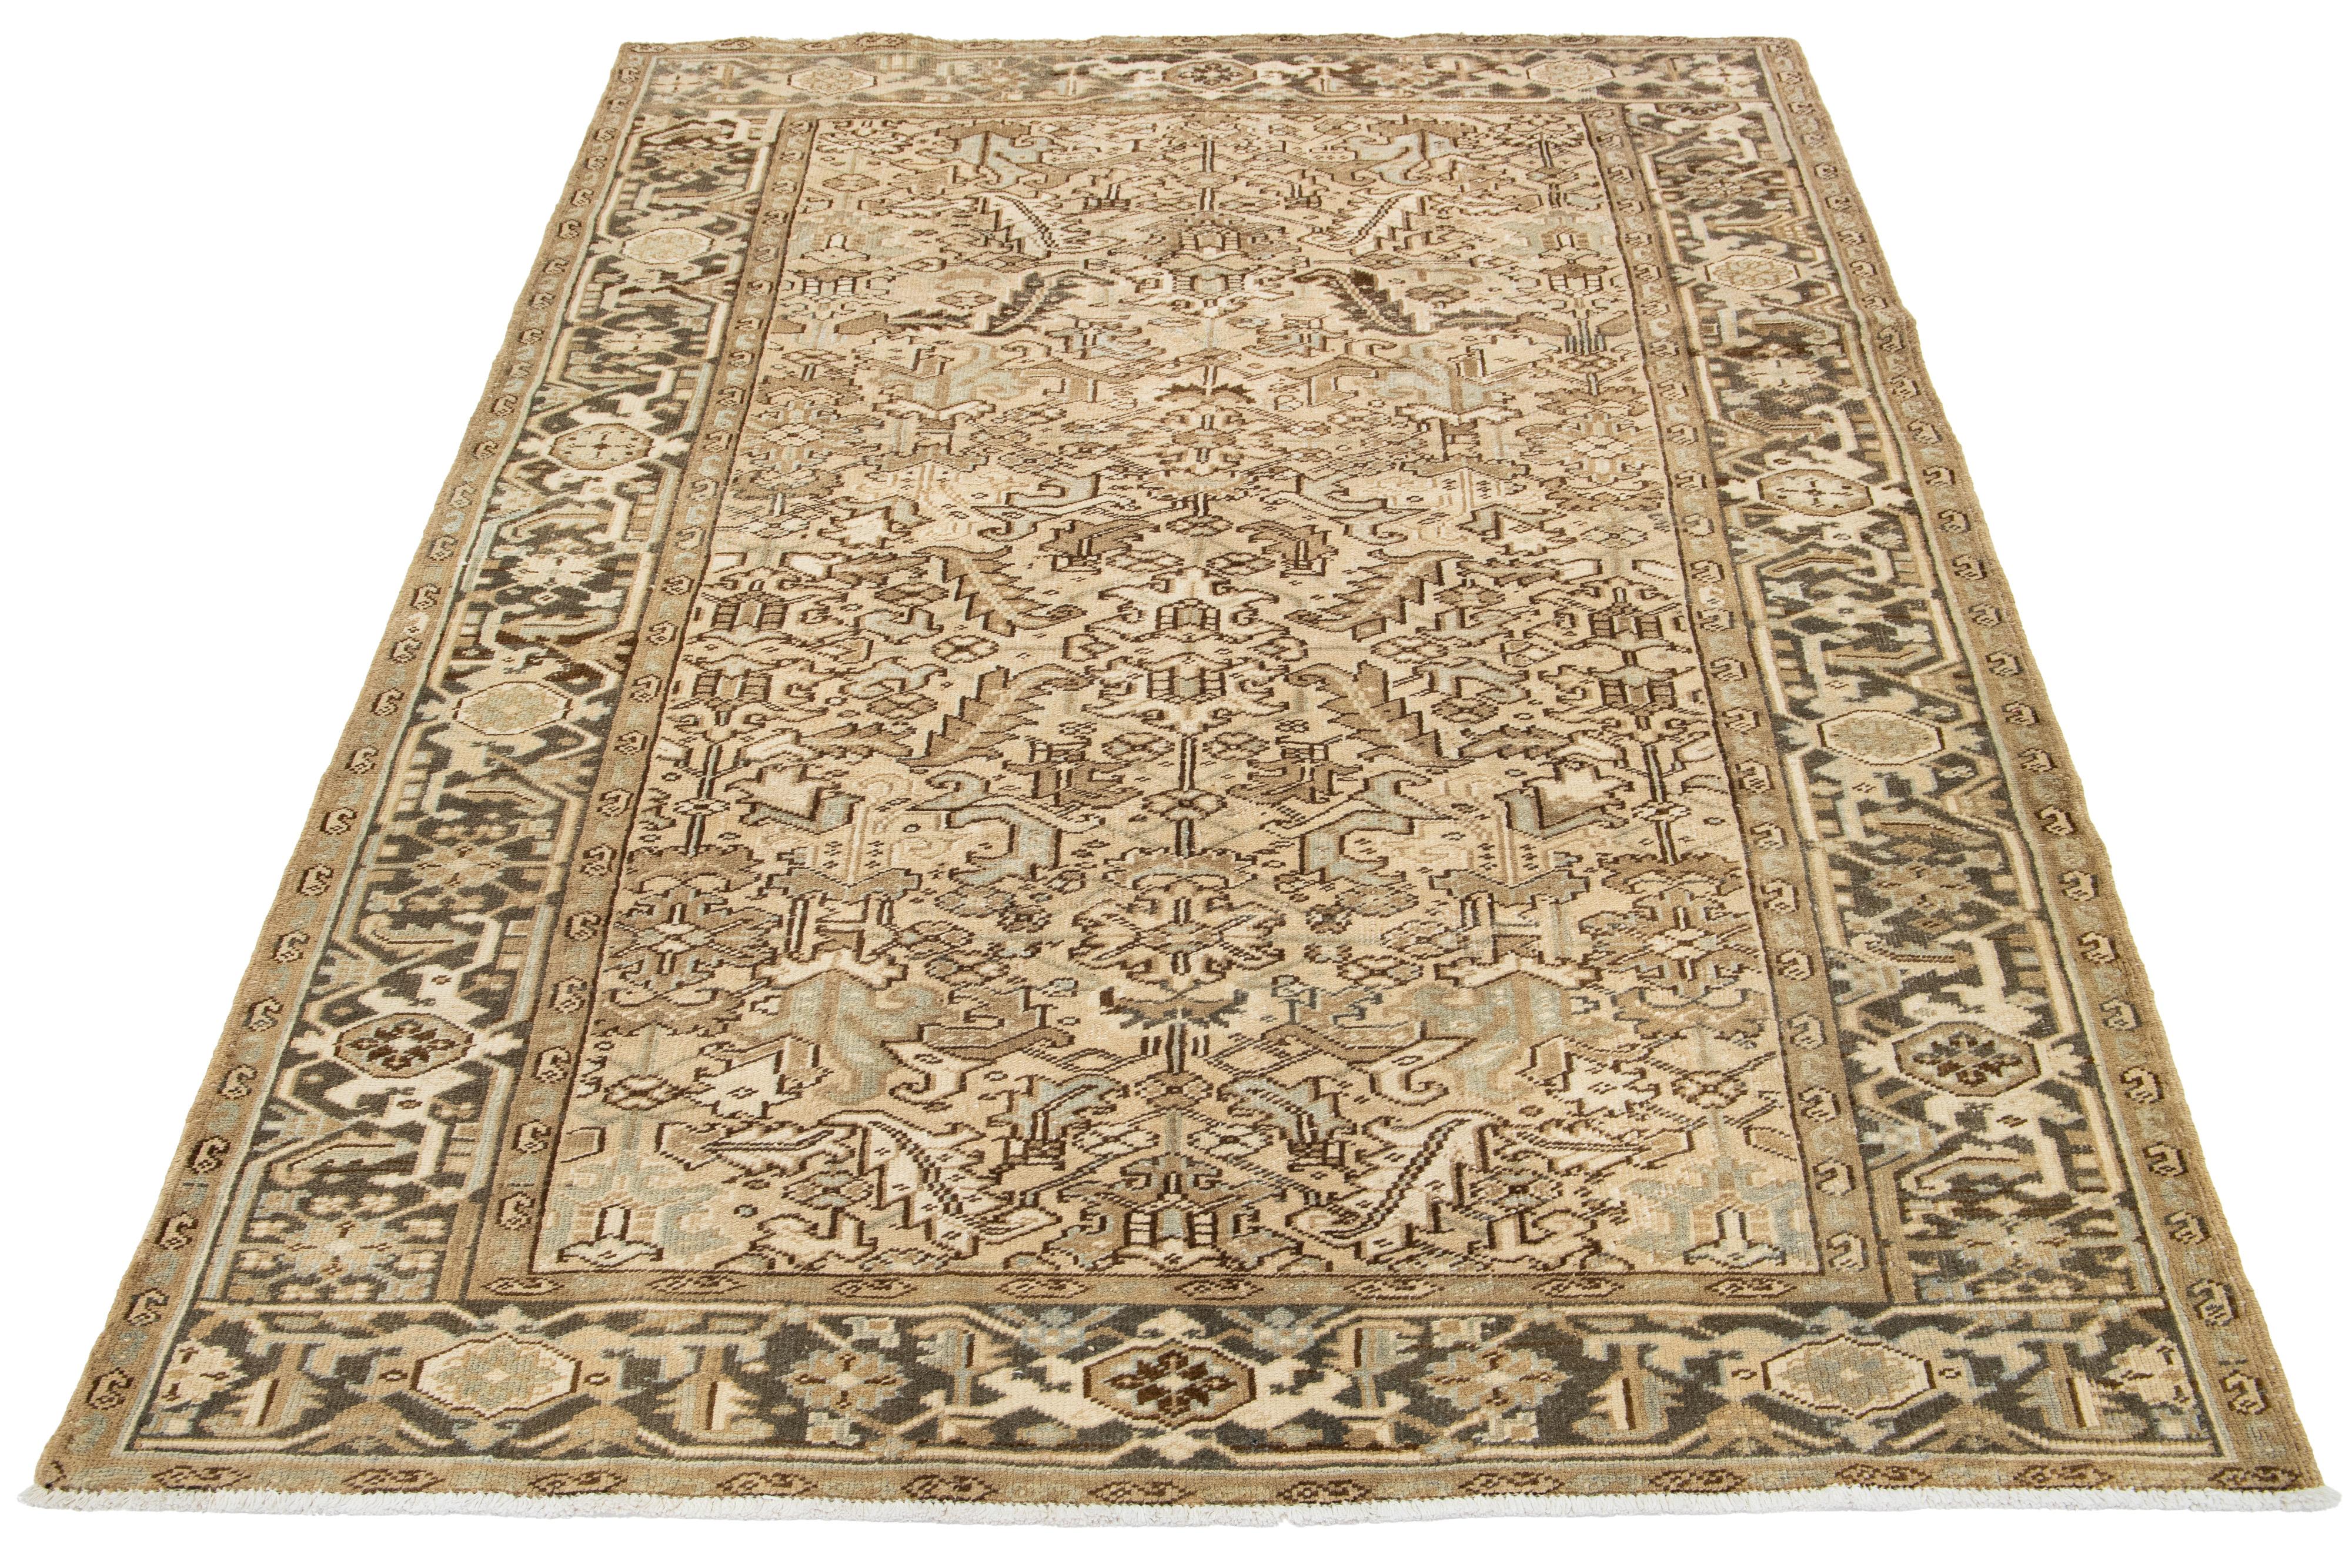 Antiker persischer Heriz-Teppich mit blauem und hellbraunem Allover-Muster auf einem beigen Feld. Handgeknüpfte Wolle.

Dieser Teppich misst 6'9' x 9'8